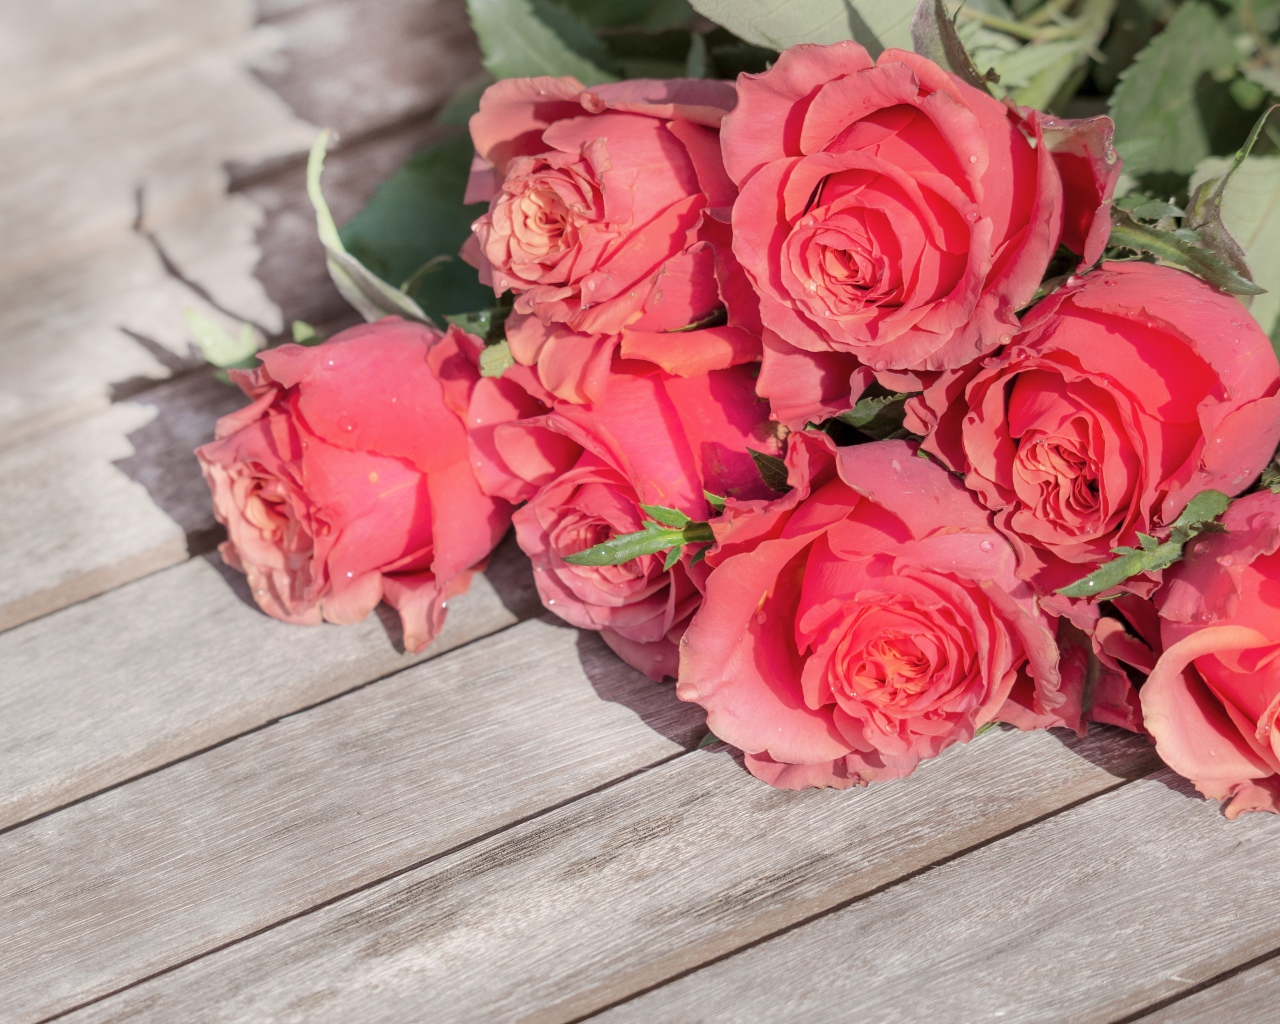 Букет розовых роз лежит на деревянной поверхности